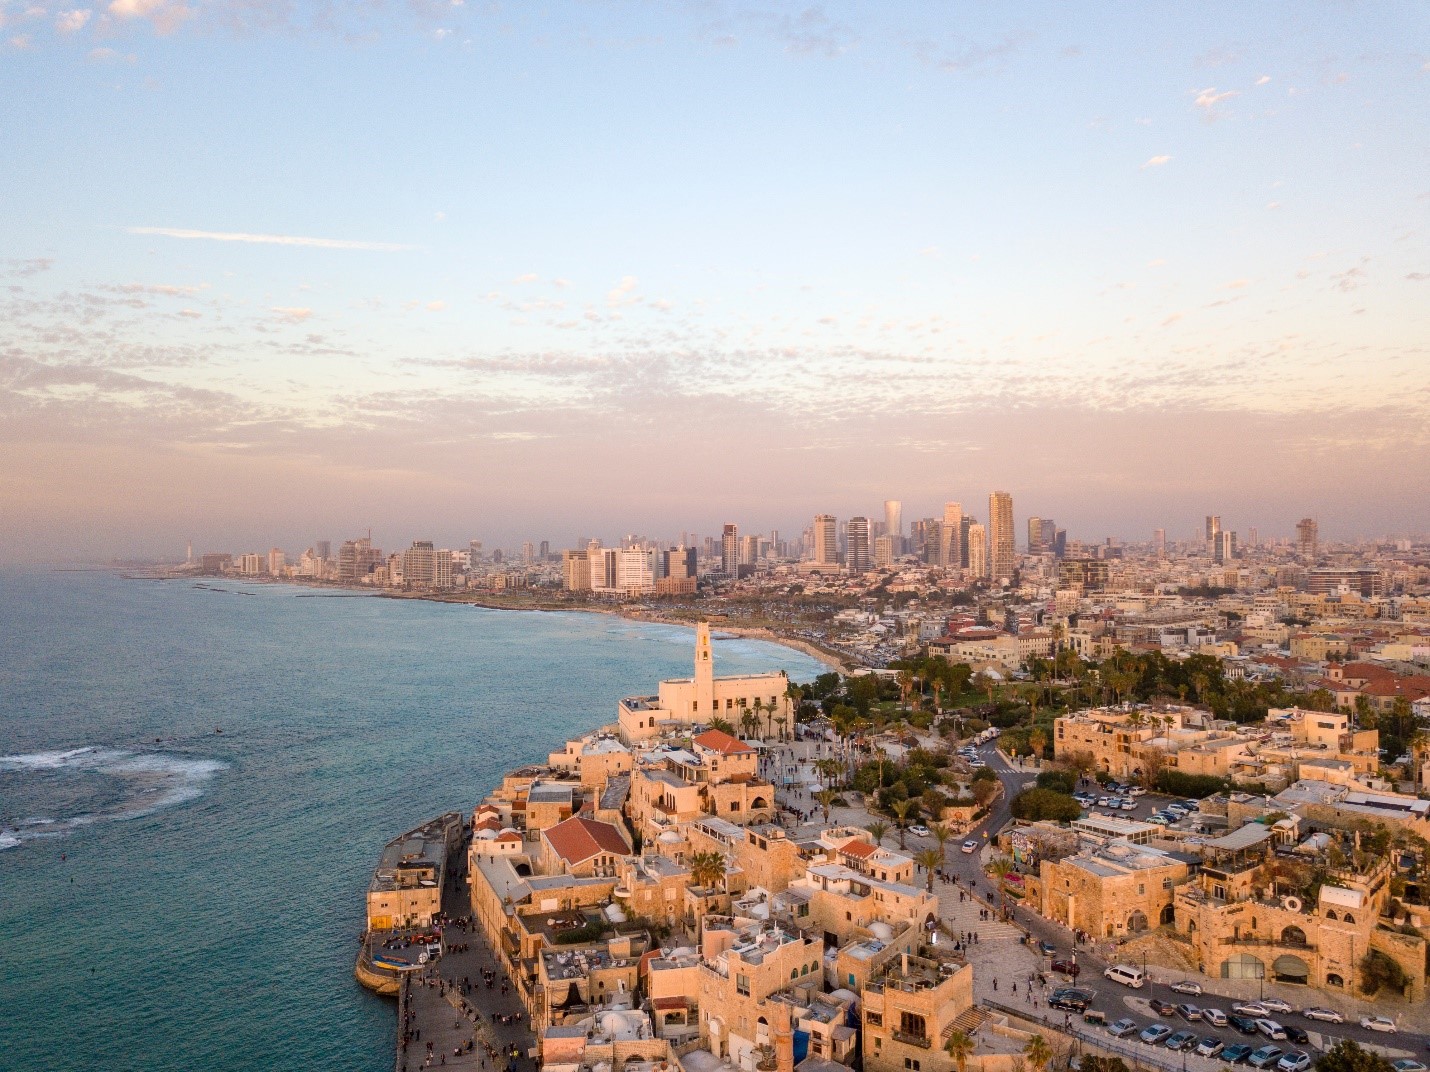 הרכישה הגדולה בחייכם: איך קונים דירה בישראל?